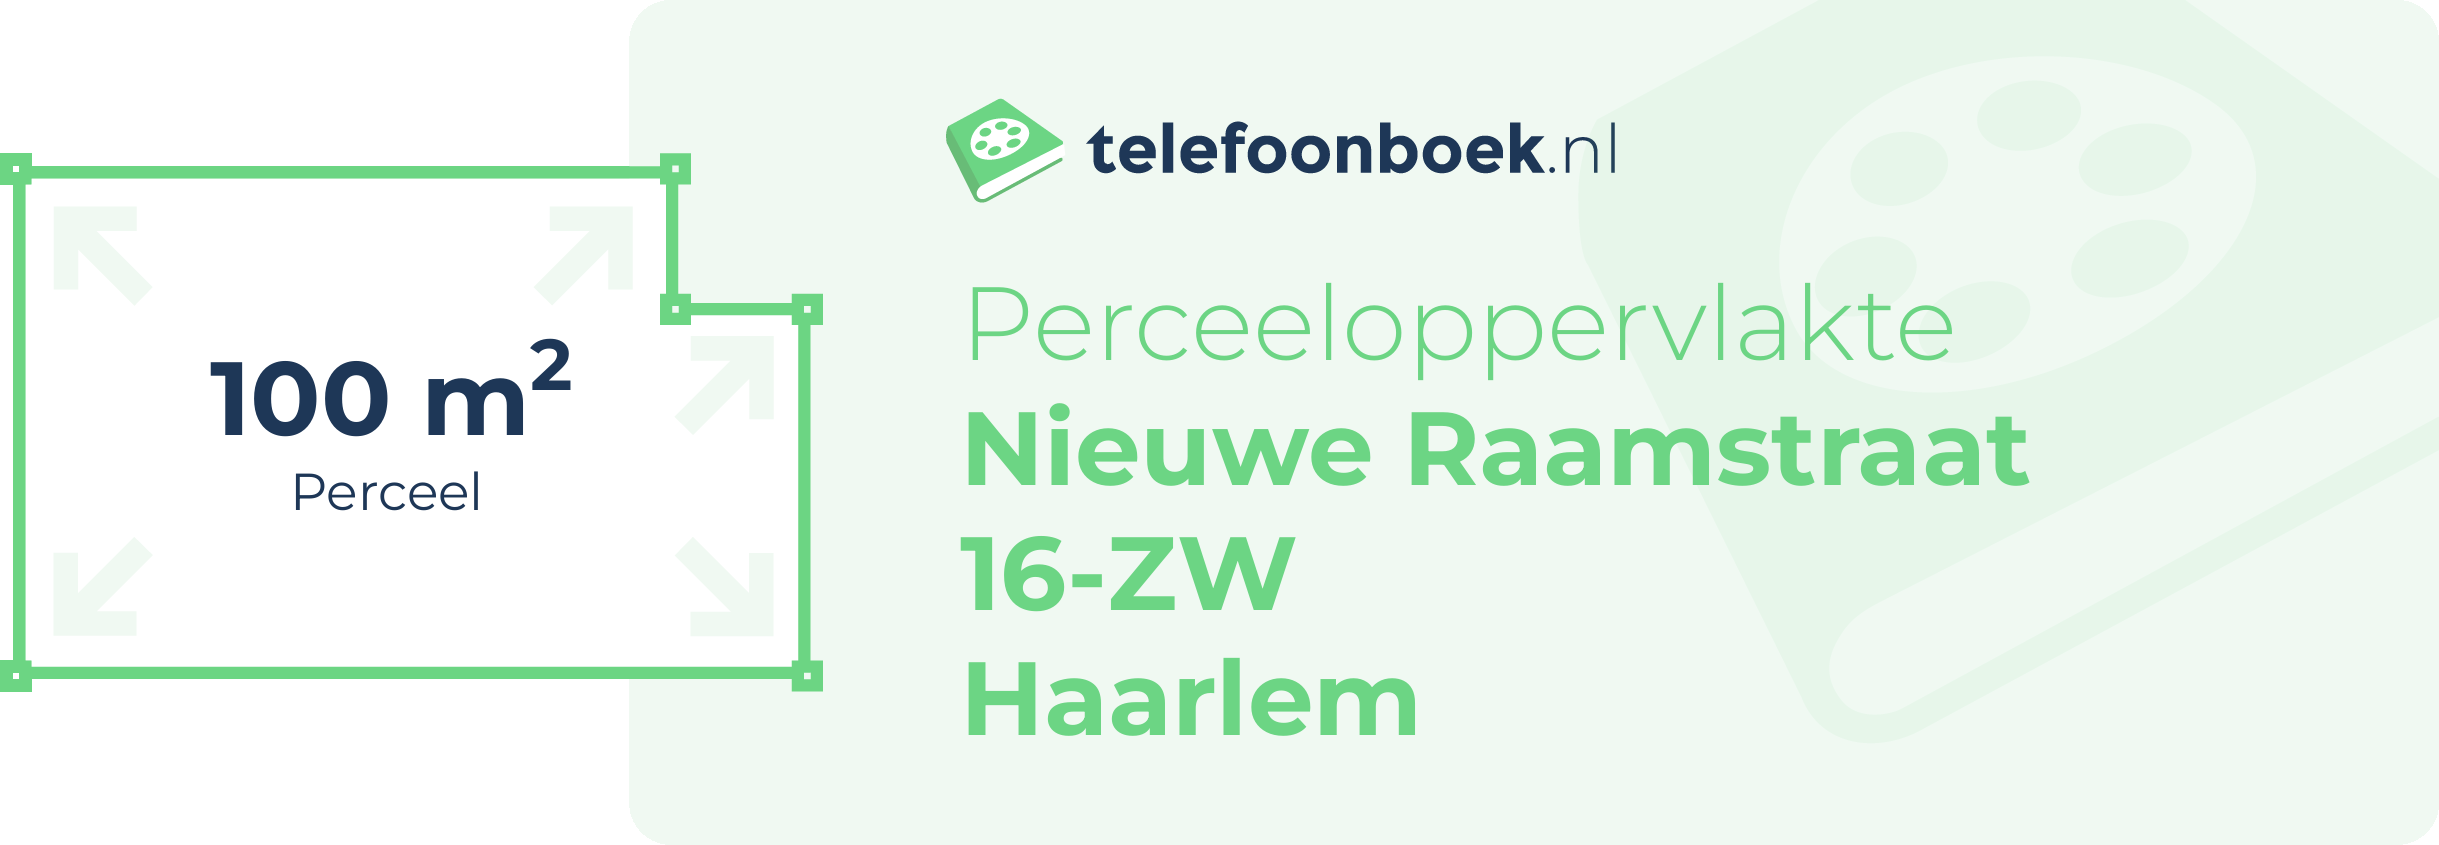 Perceeloppervlakte Nieuwe Raamstraat 16-ZW Haarlem